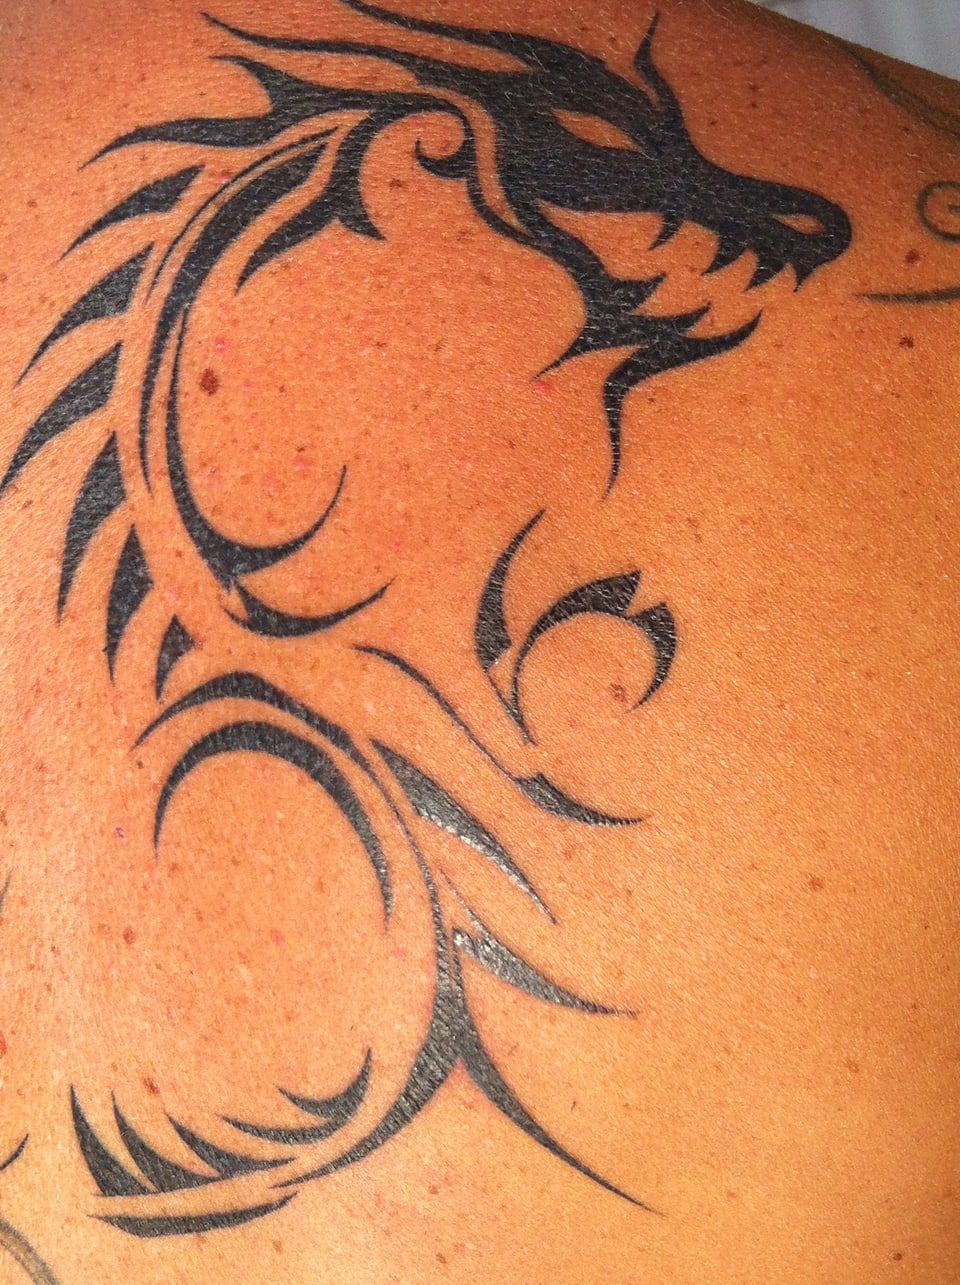 Löwen-Tattoo von Sandra Suess.